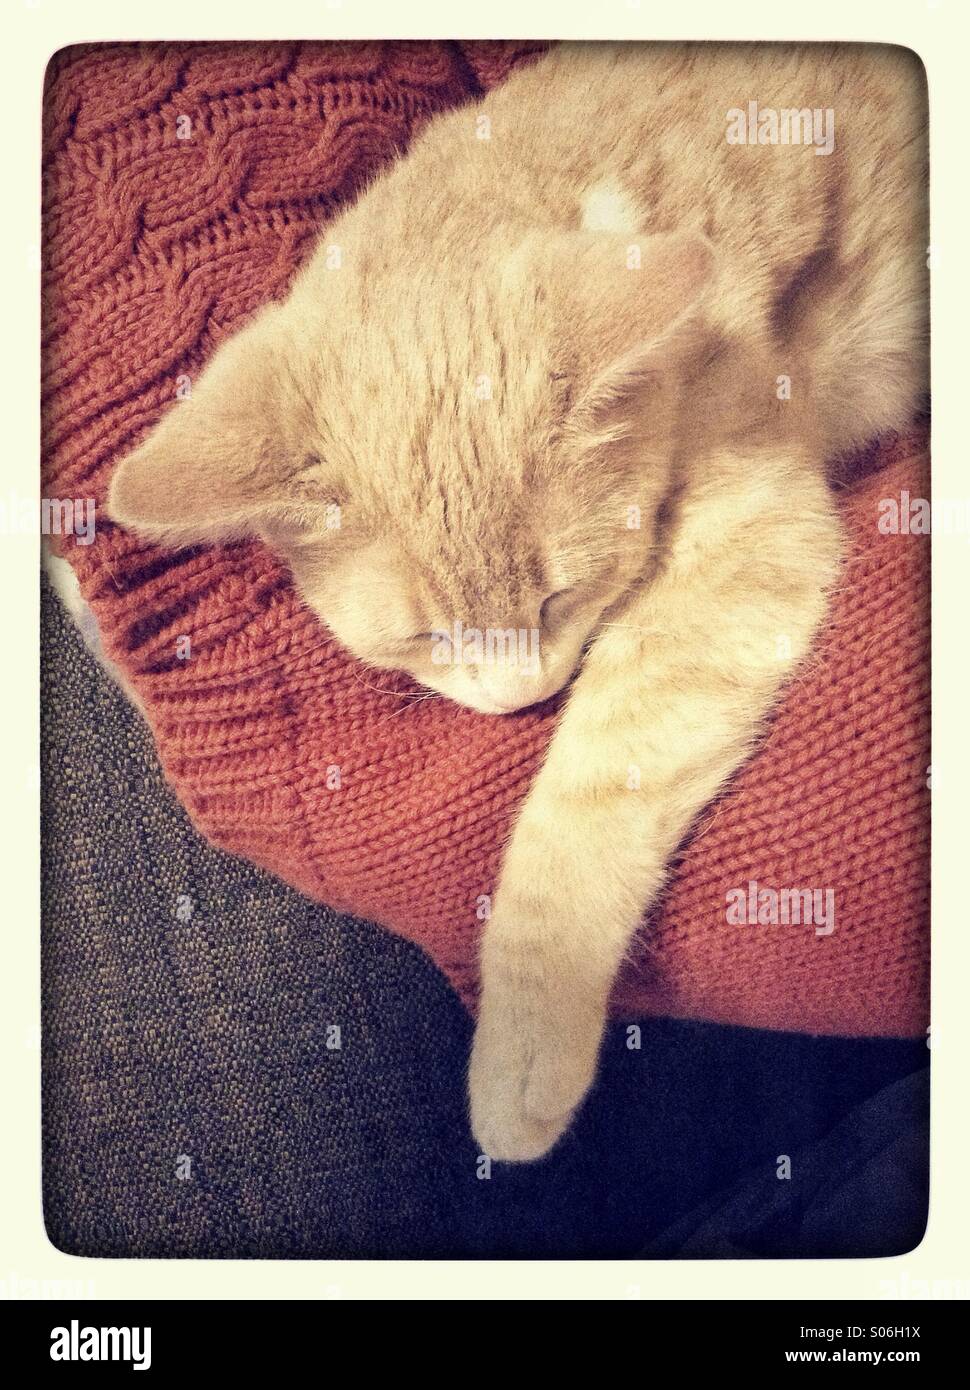 Kitten sleeping on red jumper Stock Photo